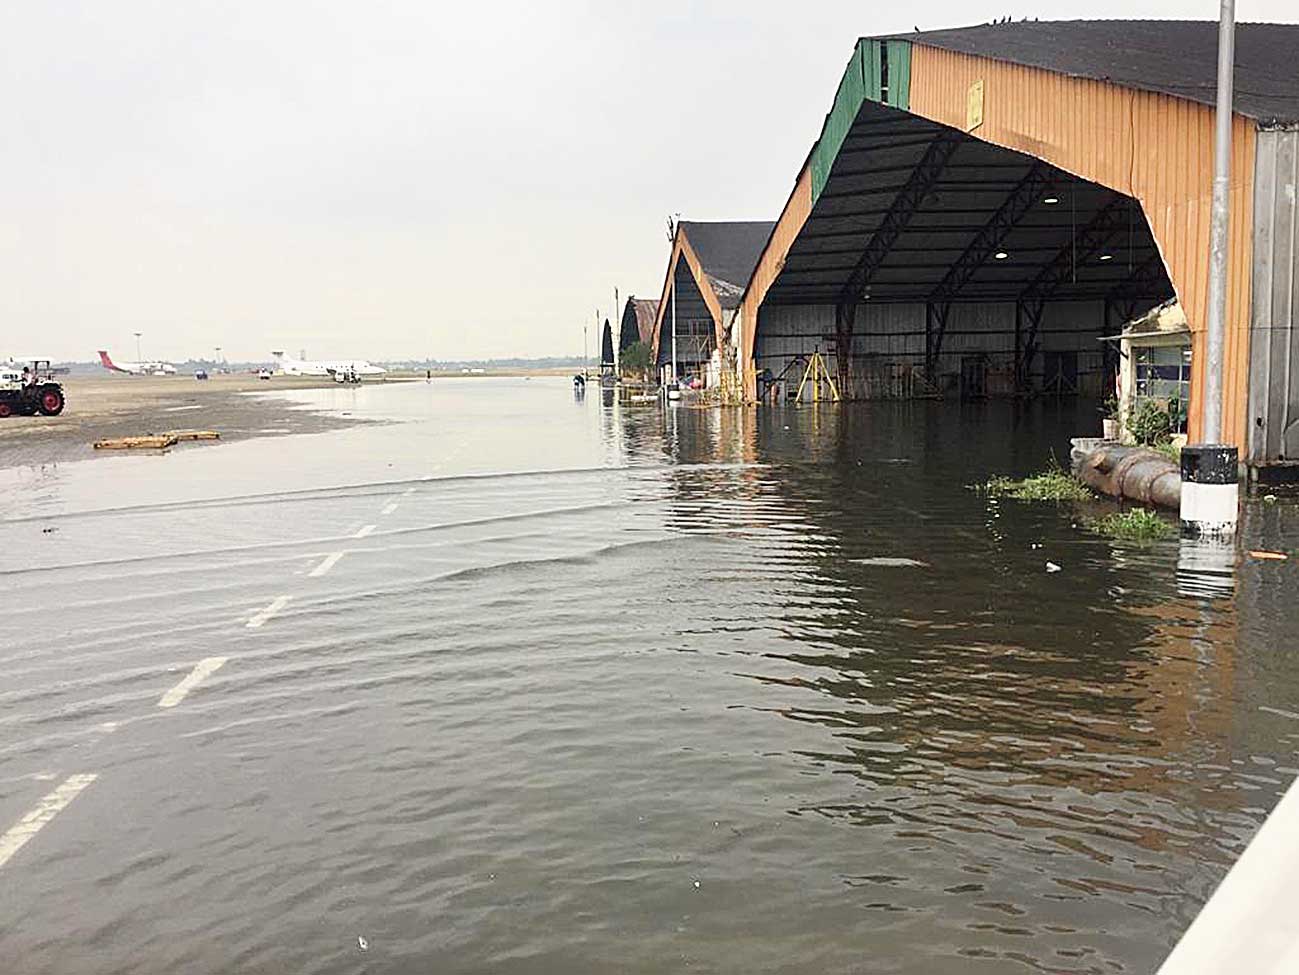 A waterlogged hangar at the airport.